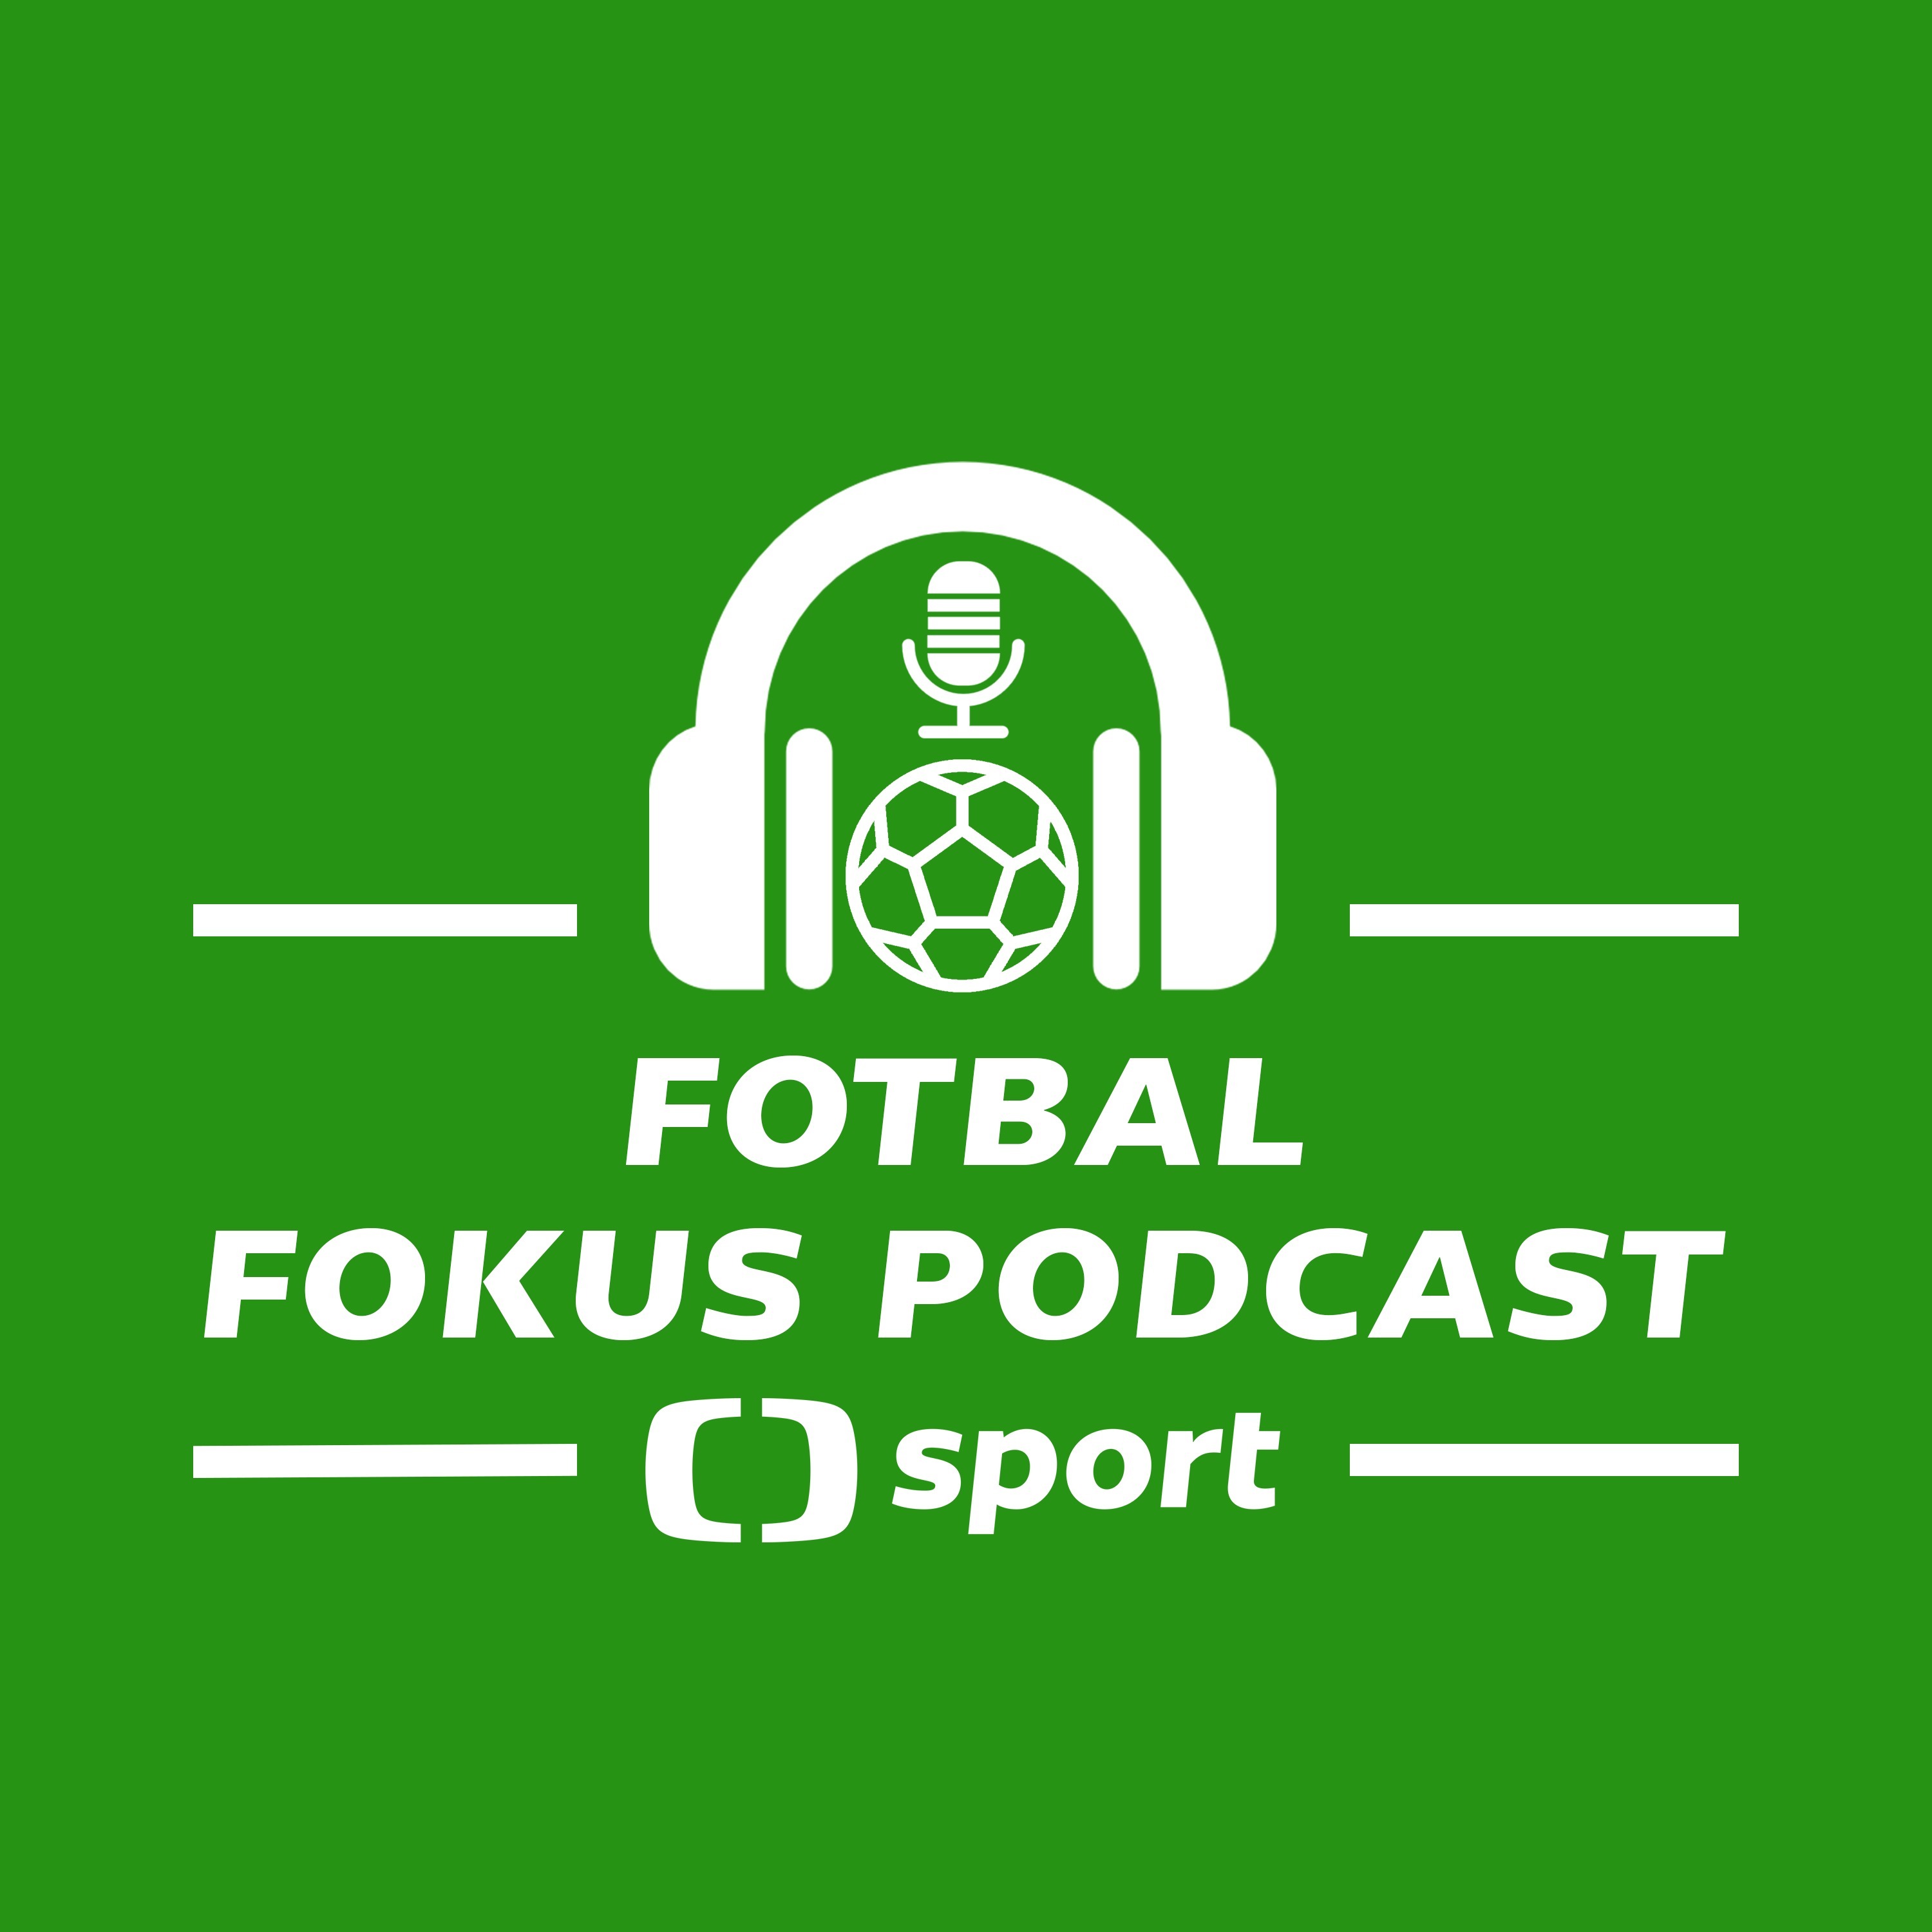 Fotbal fokus podcast: Může ještě Slavia přijít o titul a je rozhodnutí UEFA o Baku hanebným?